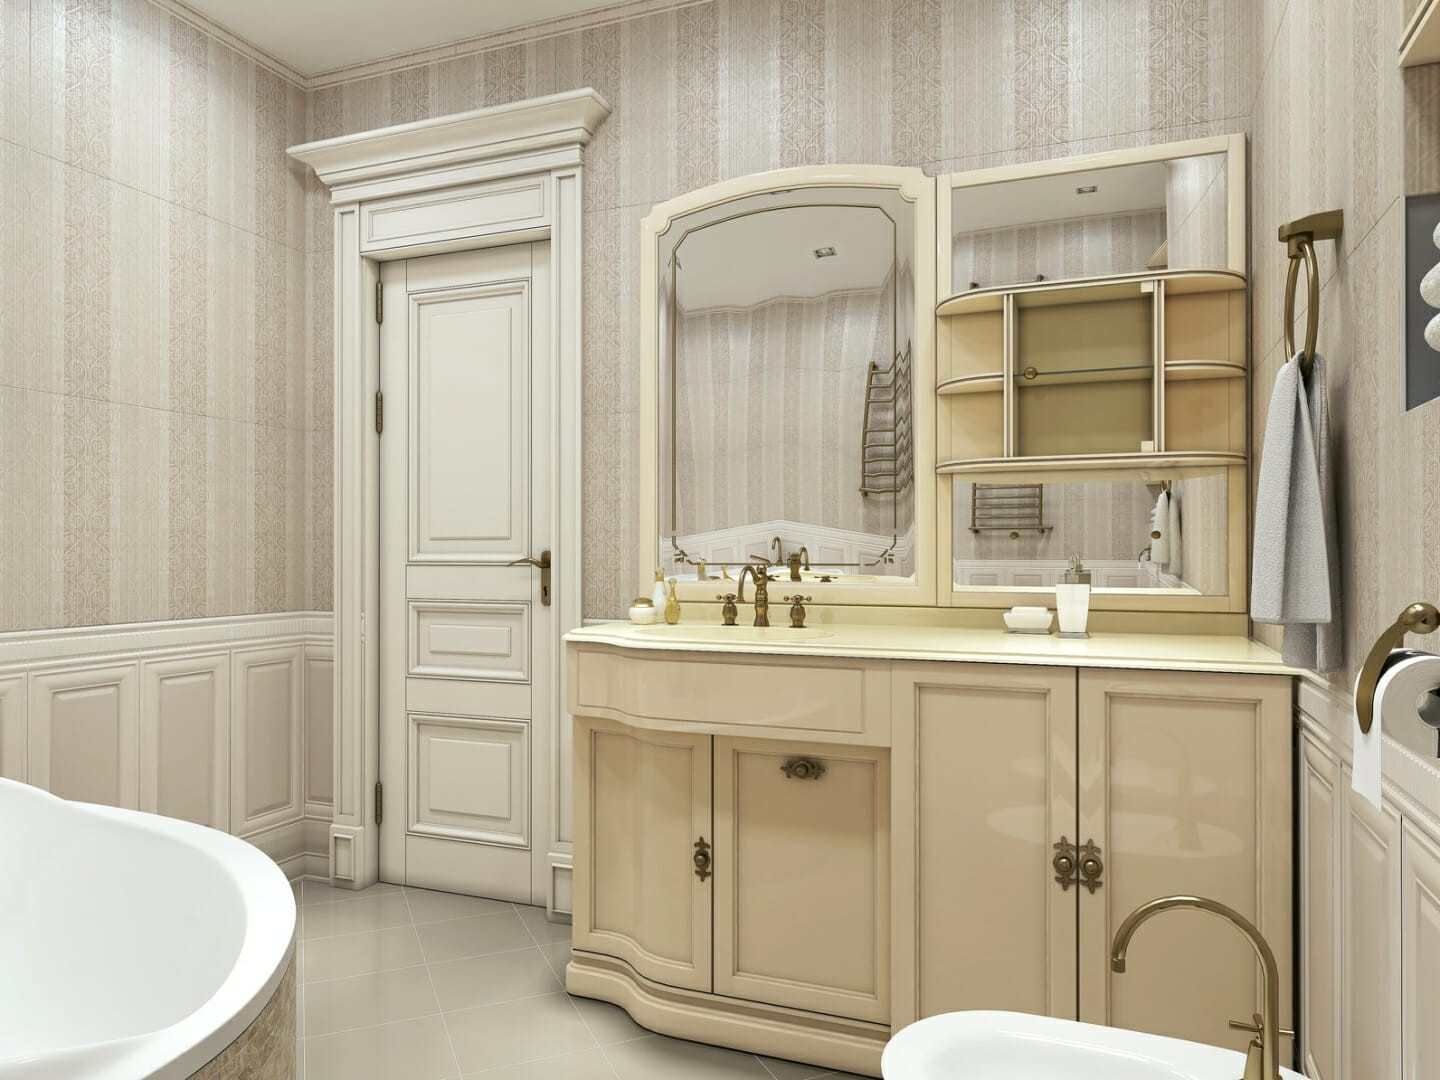 Repurposed Bathroom Vanities
 Repurposing Furniture as a Bathroom Sink Vanity Modernize